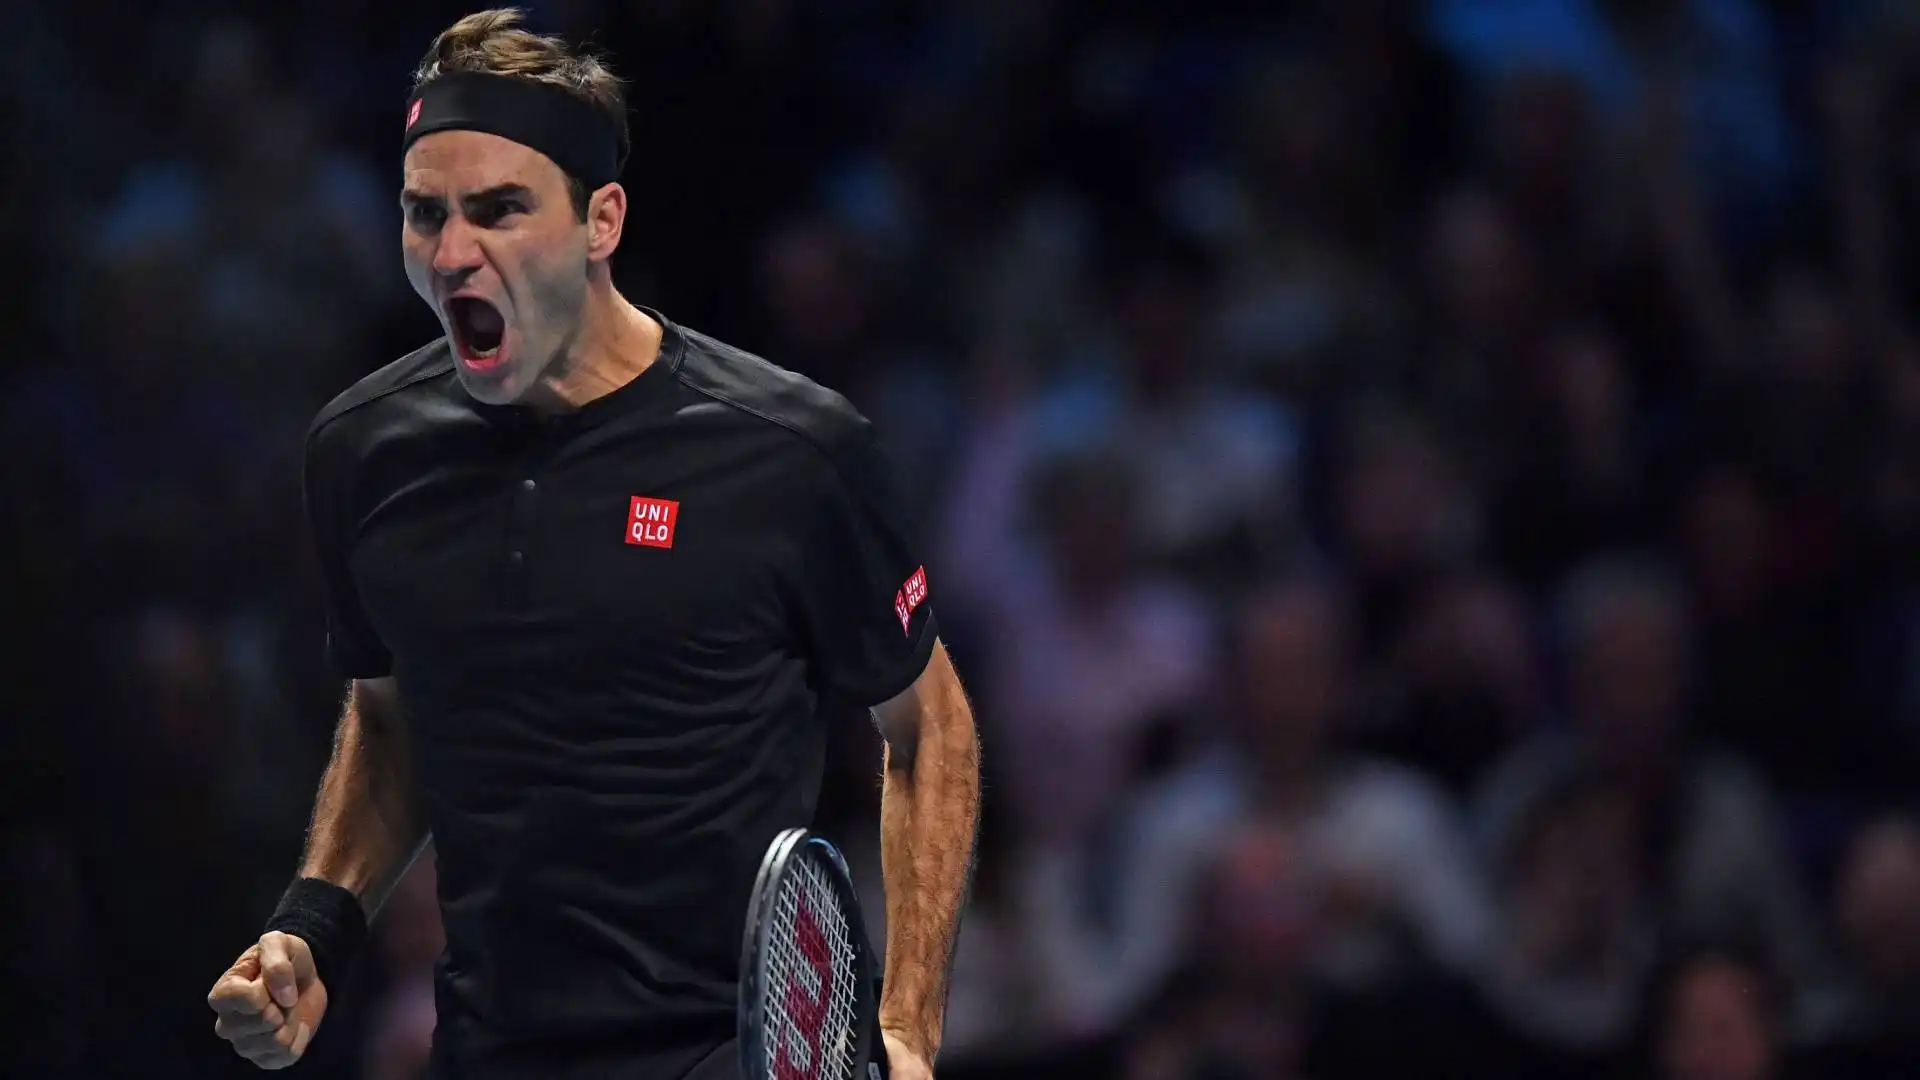 Roger Federer è considerato uno dei migliori tennisti della storia, avendo vinto quasi tutti i tornei più importanti, in molteplici occasioni